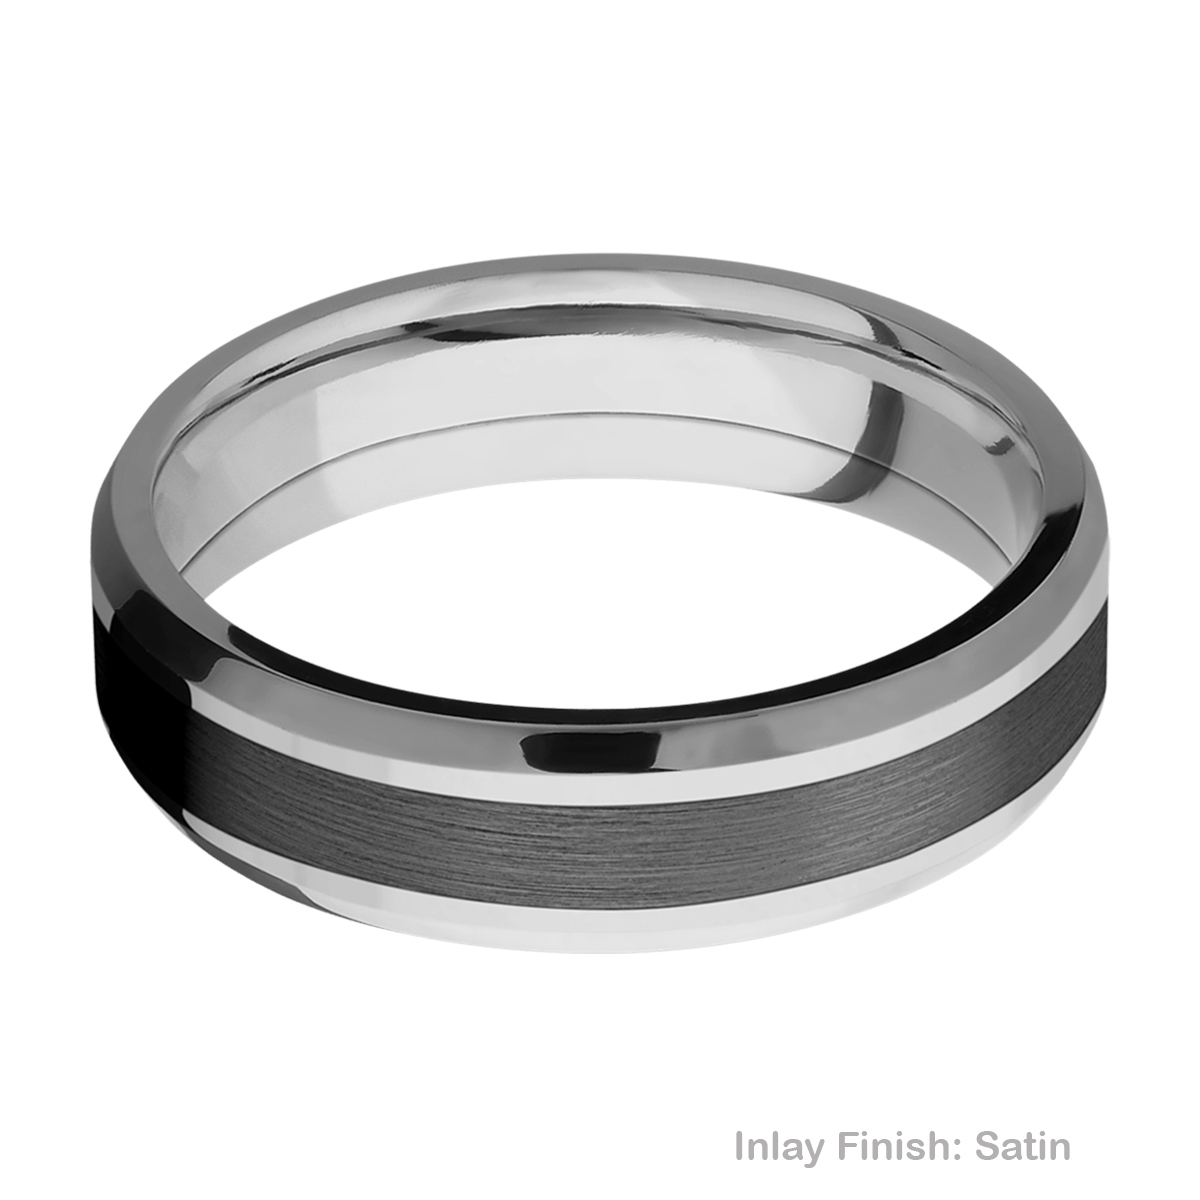 Lashbrook PF6B13(NS)/ZIRCONIUM Titanium Wedding Ring or Band